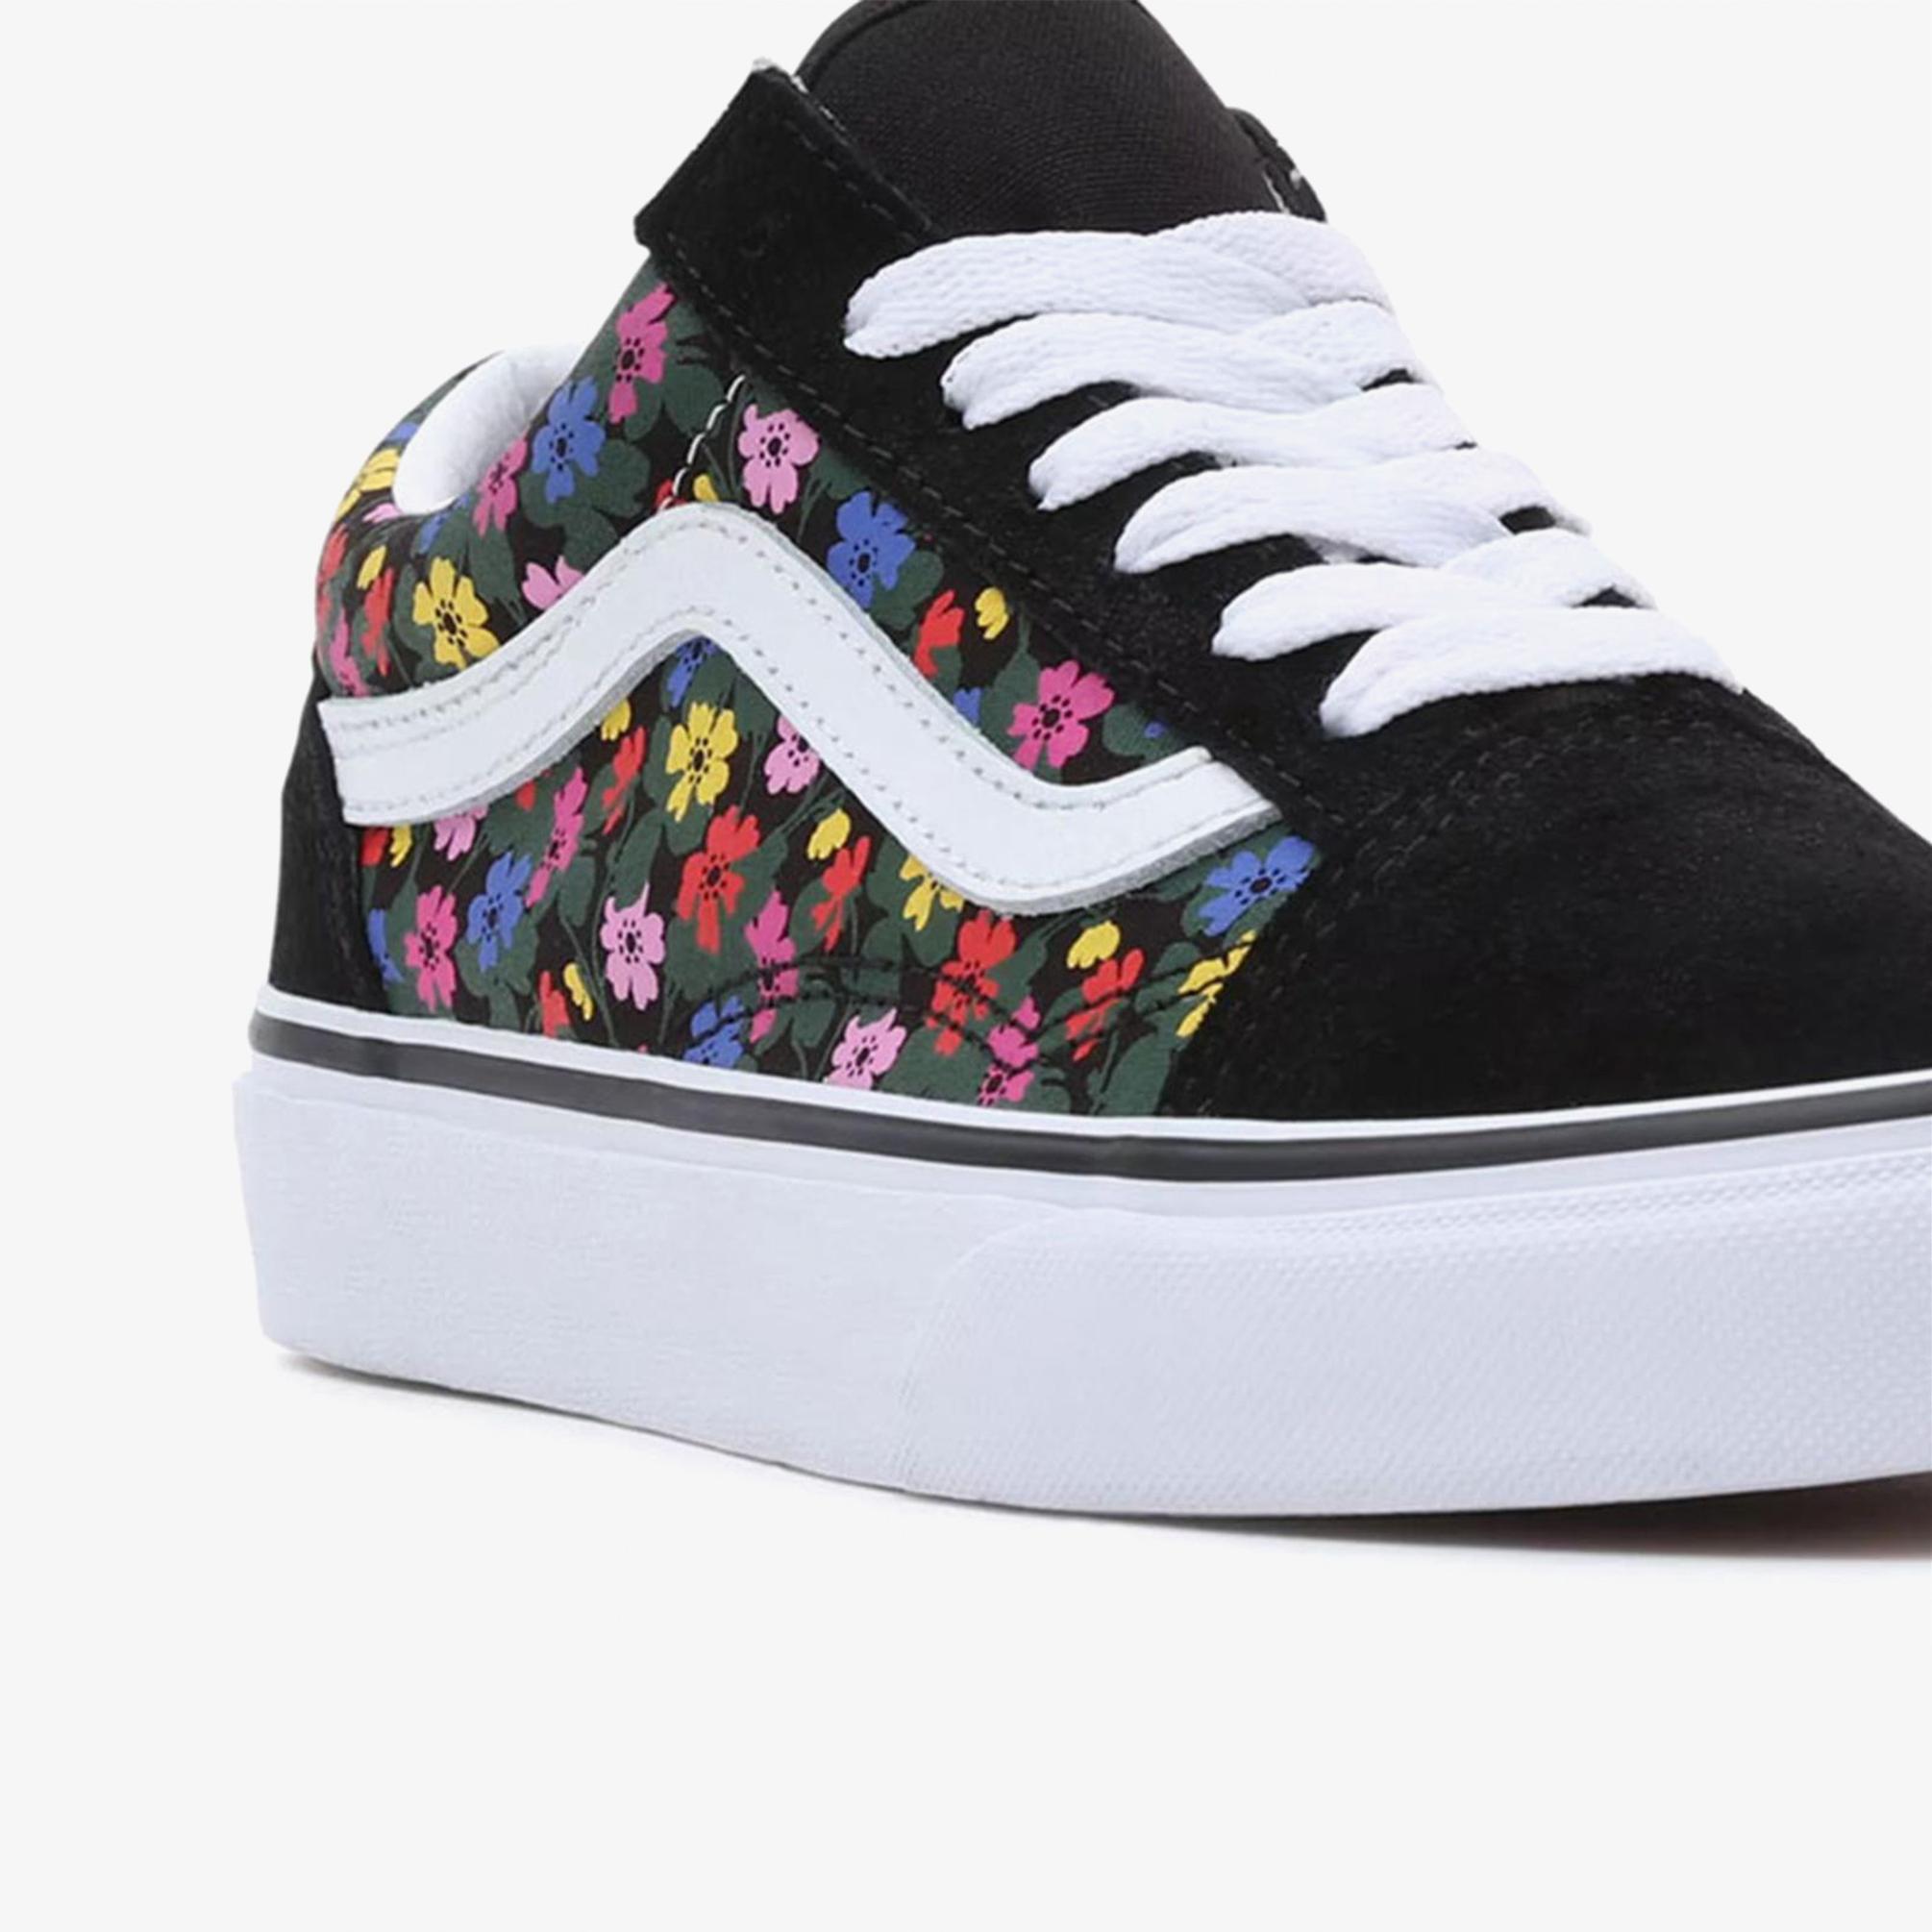  Vans Old Skool Floral Kadın Siyah Sneaker